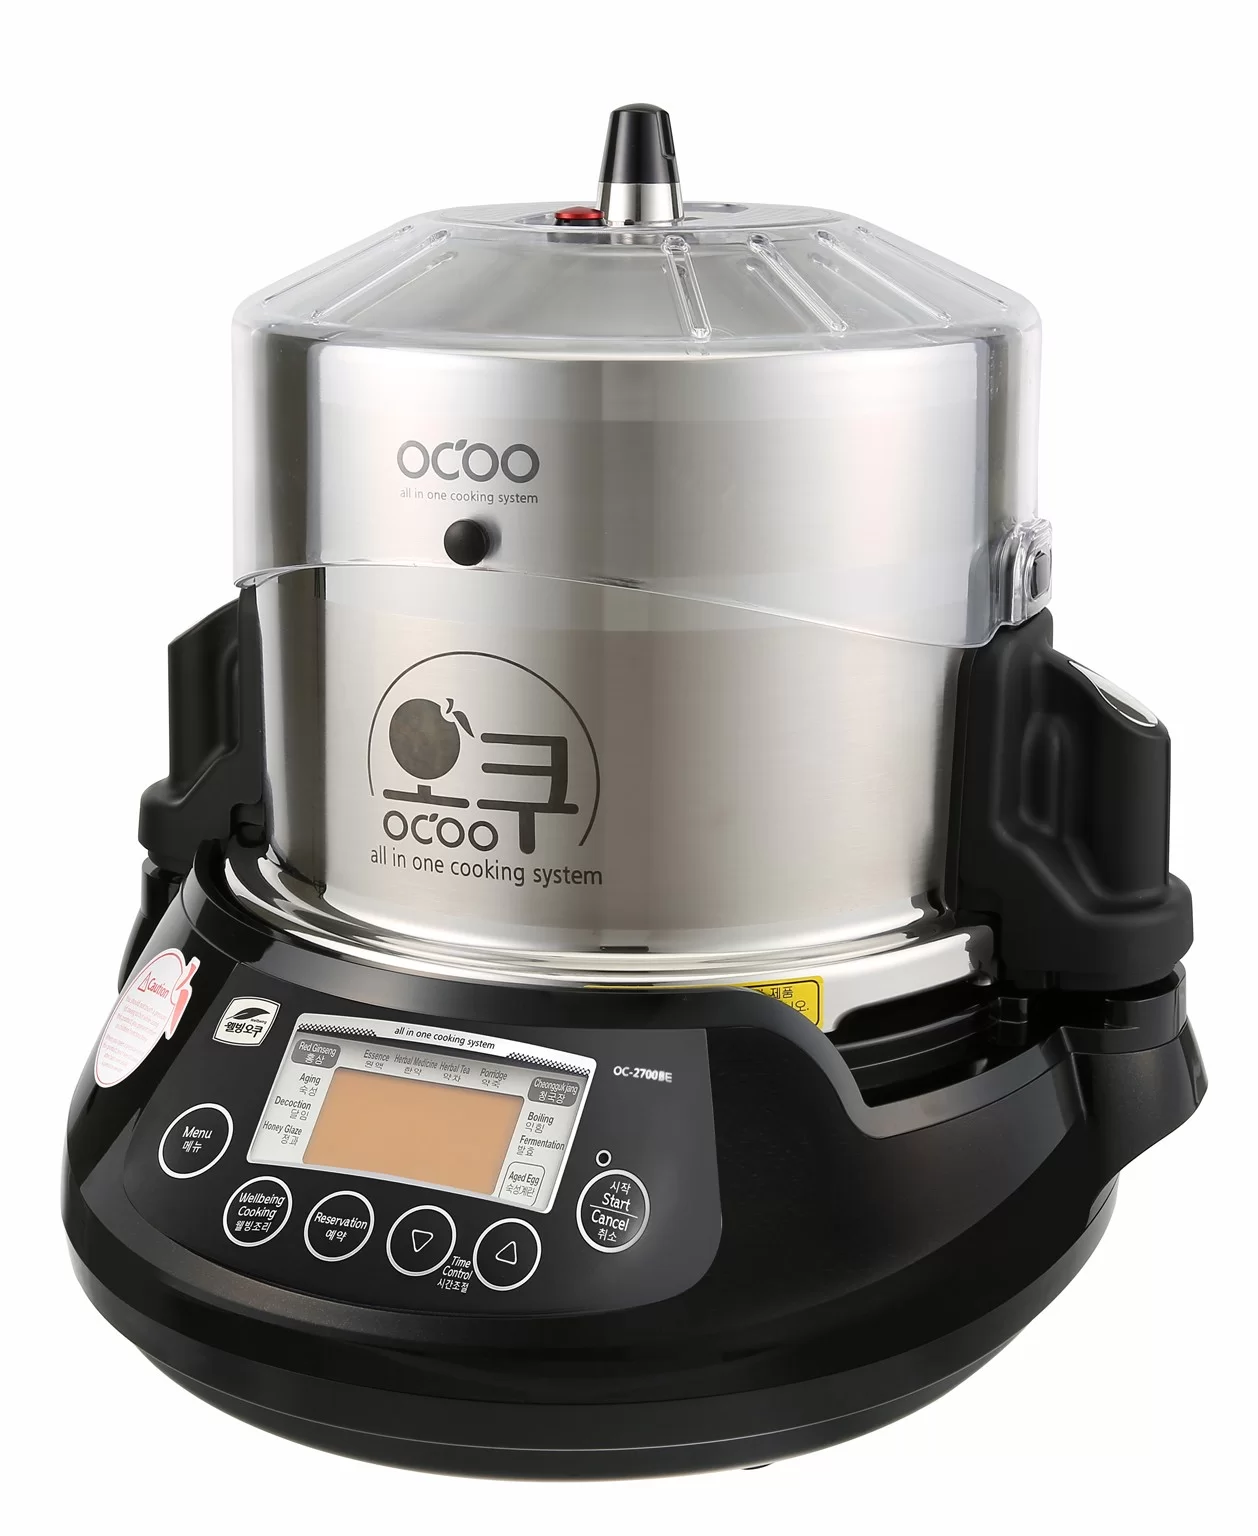 OCOO Auto Pressure Double Boiler (Black), 1 unit